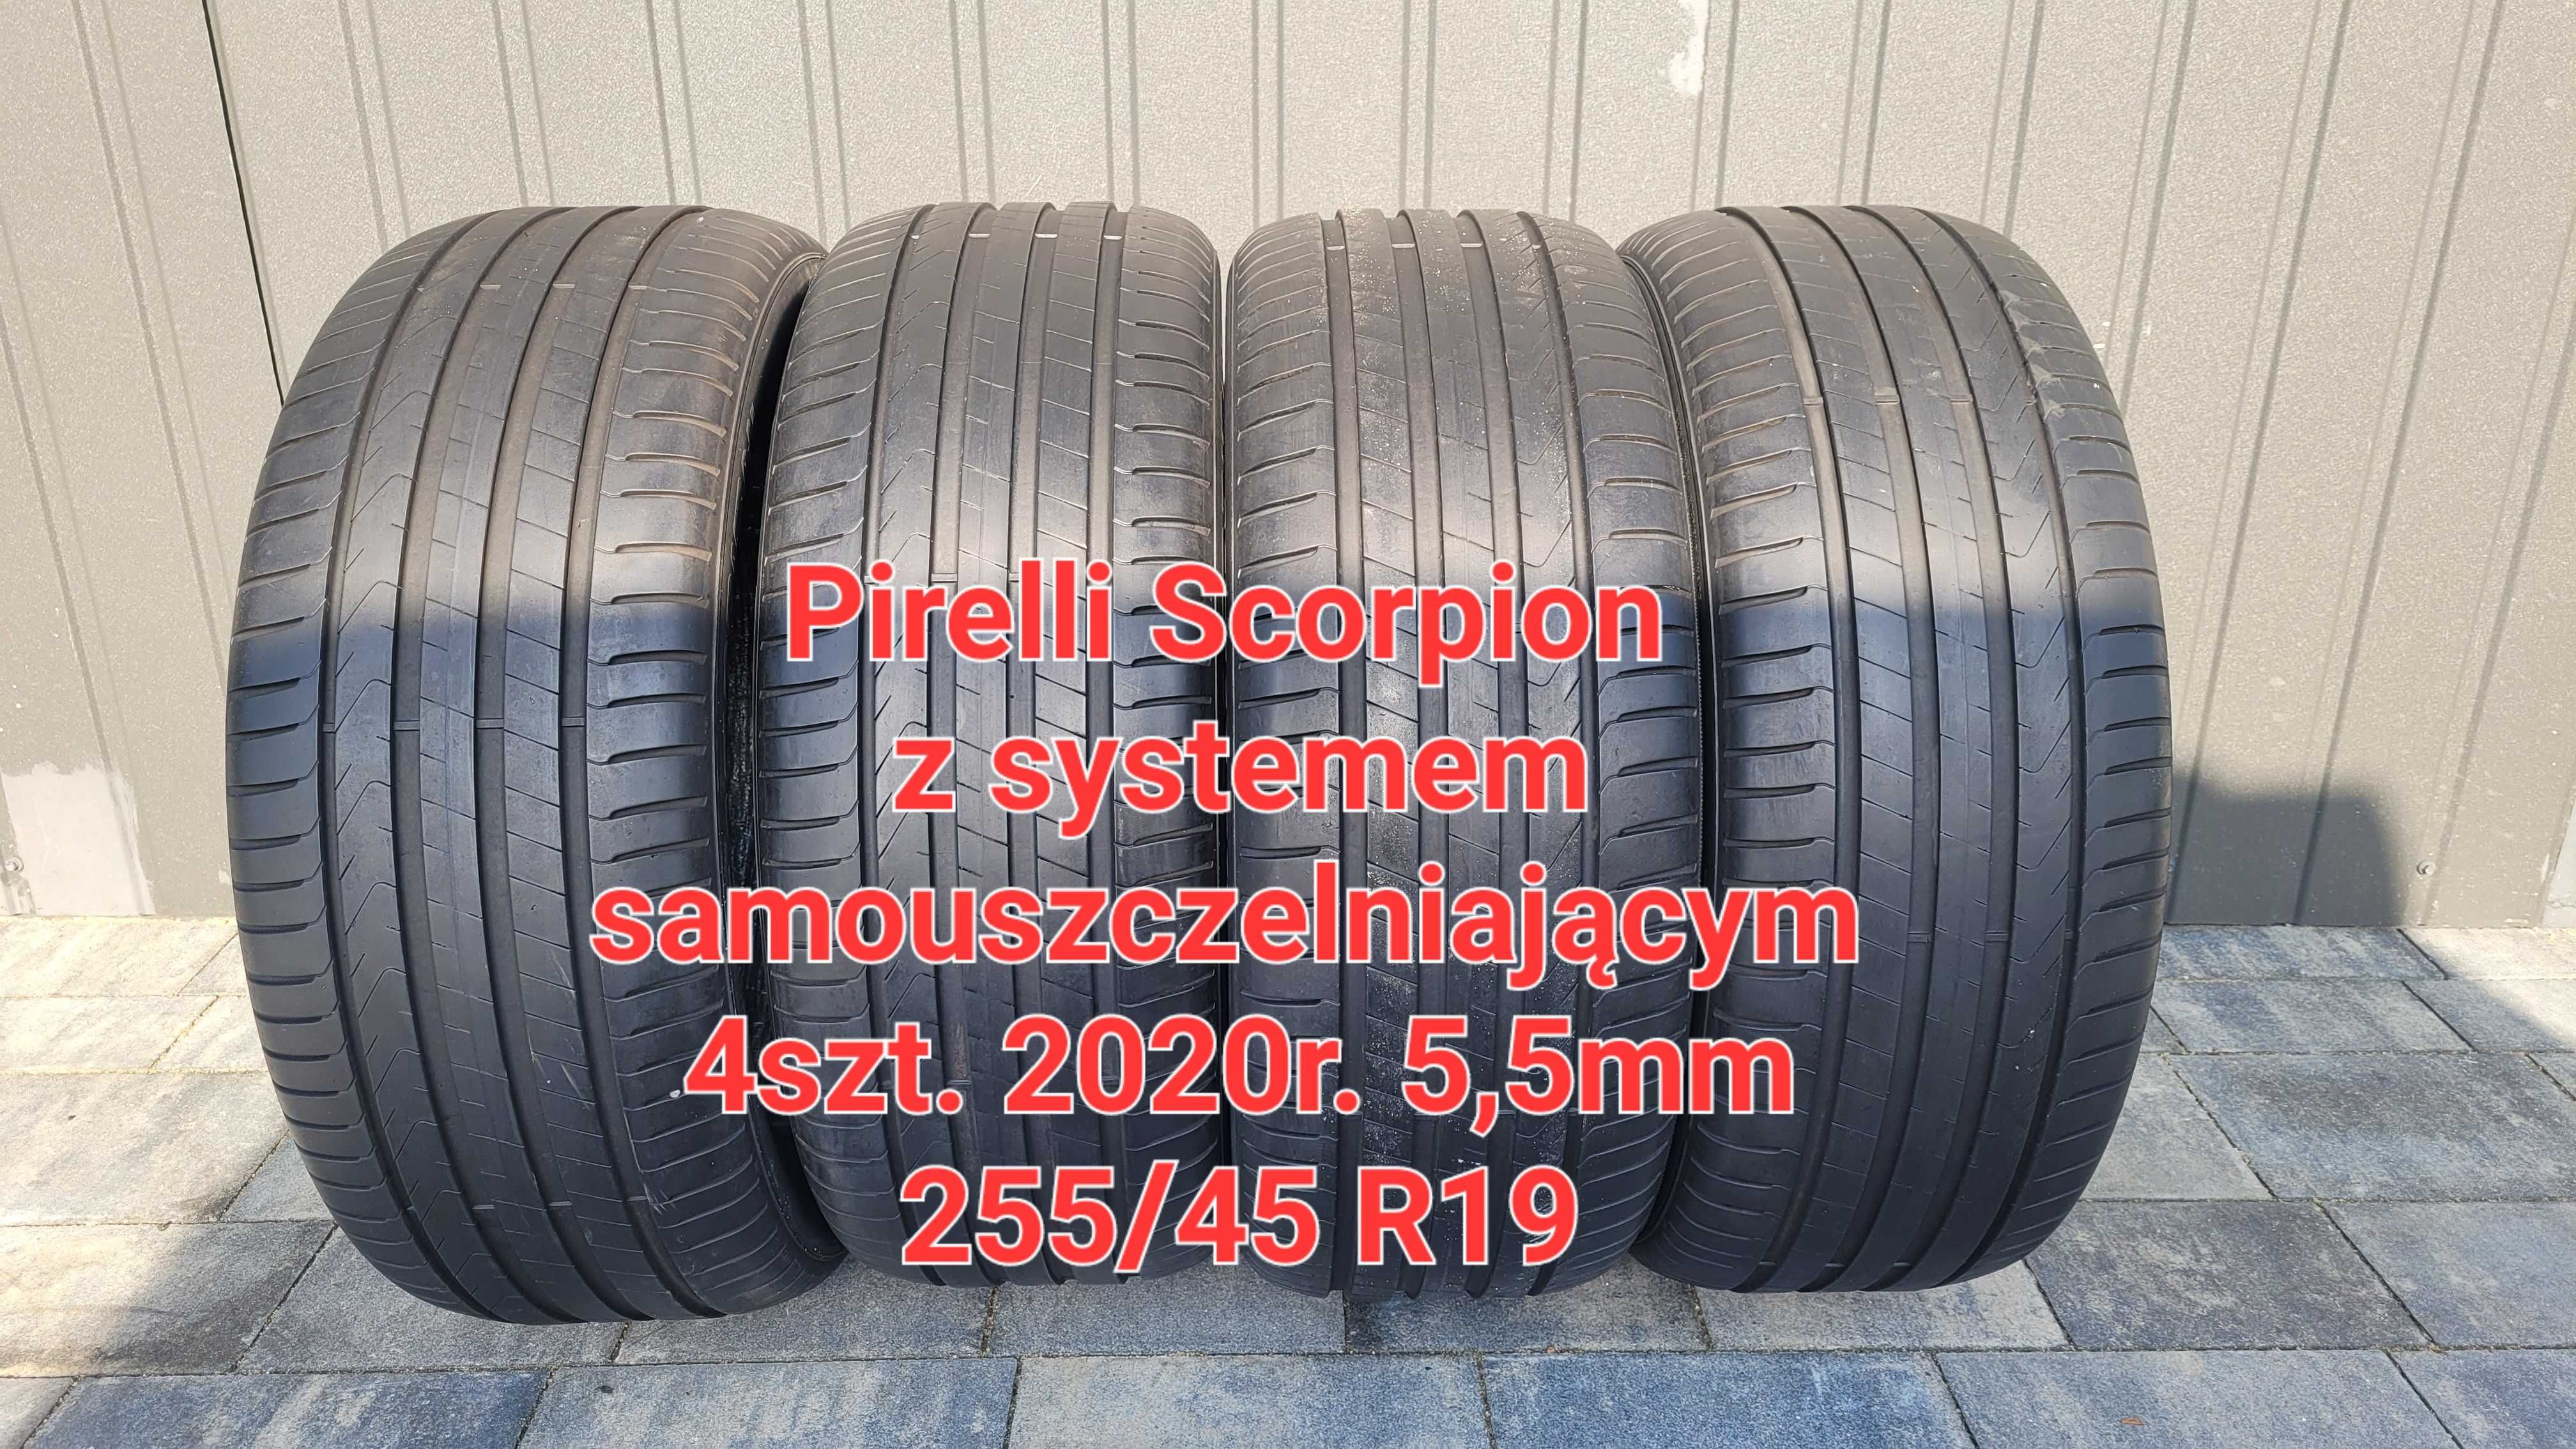 Opony  Lato klasy Premium Pirelli Scorpion 255/45 R19 kpl. 2020/21r.